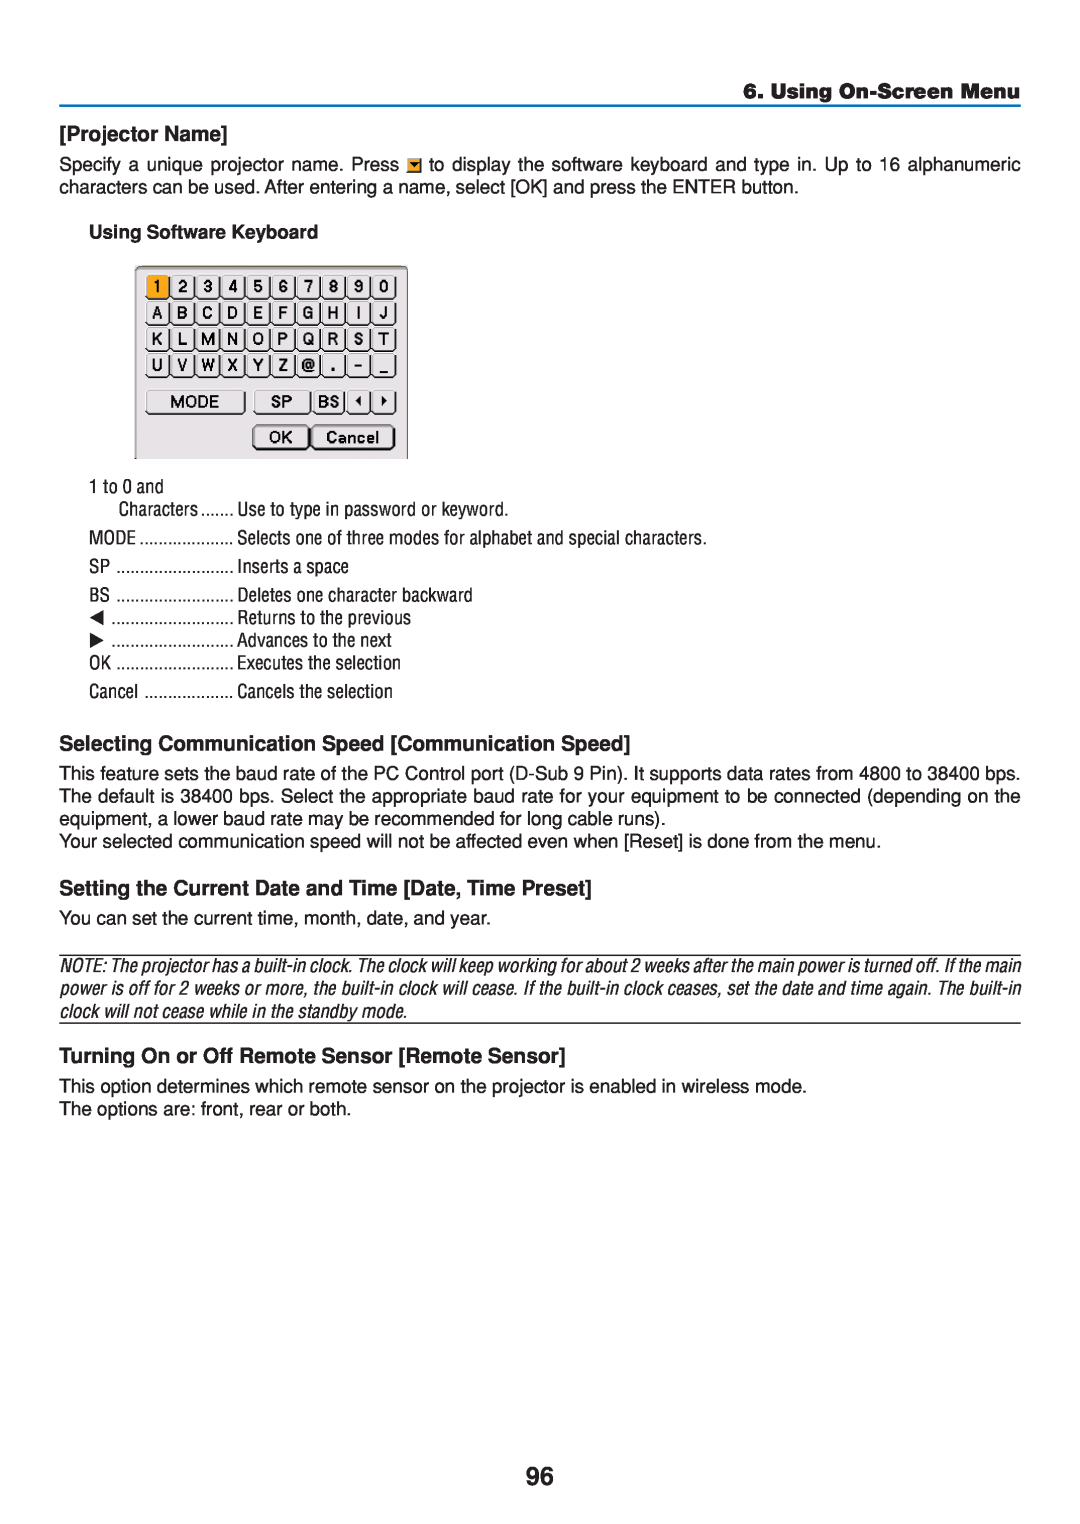 Dukane 8808 user manual Projector Name, Selecting Communication Speed Communication Speed, Using On-Screen Menu 